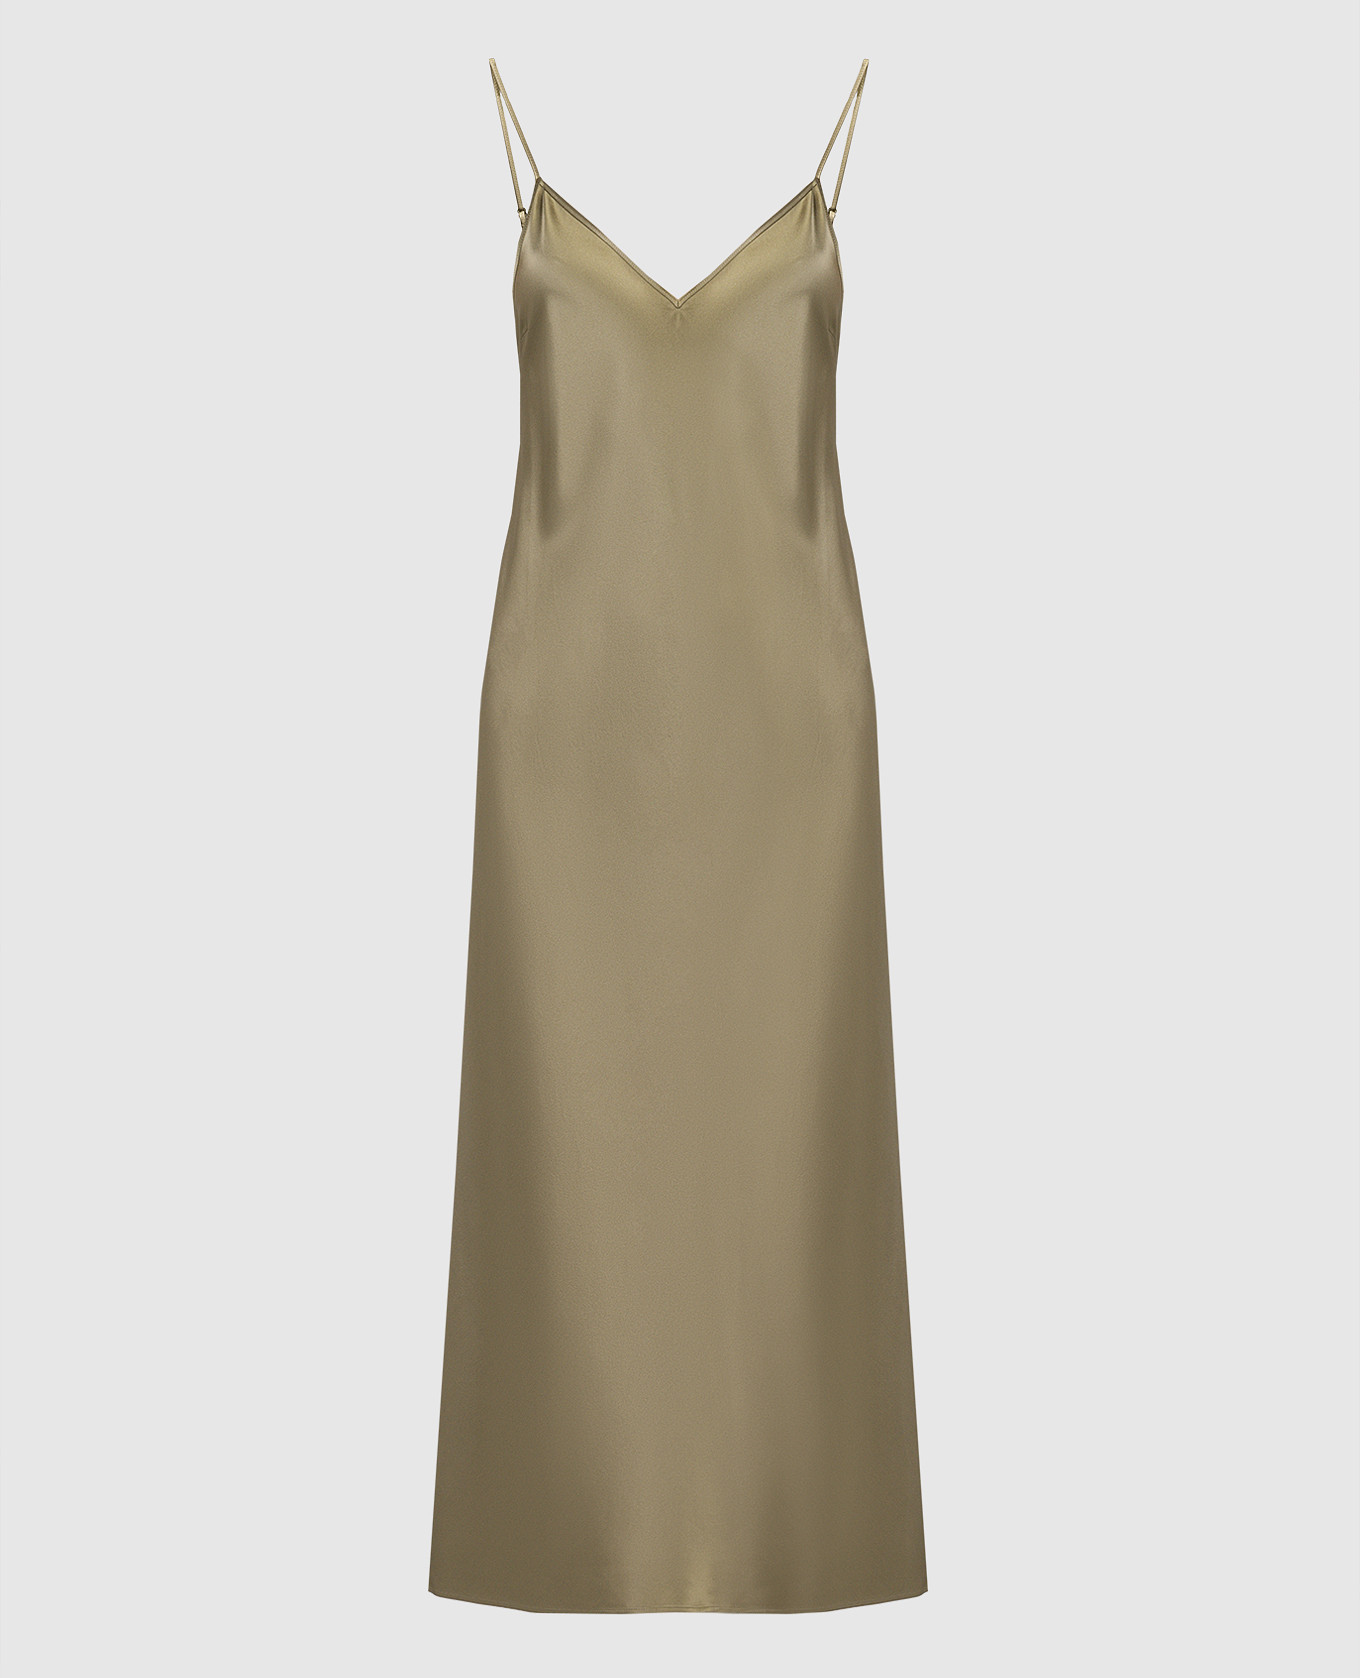 Платье-комбинация Clea цвета хаки из шелка